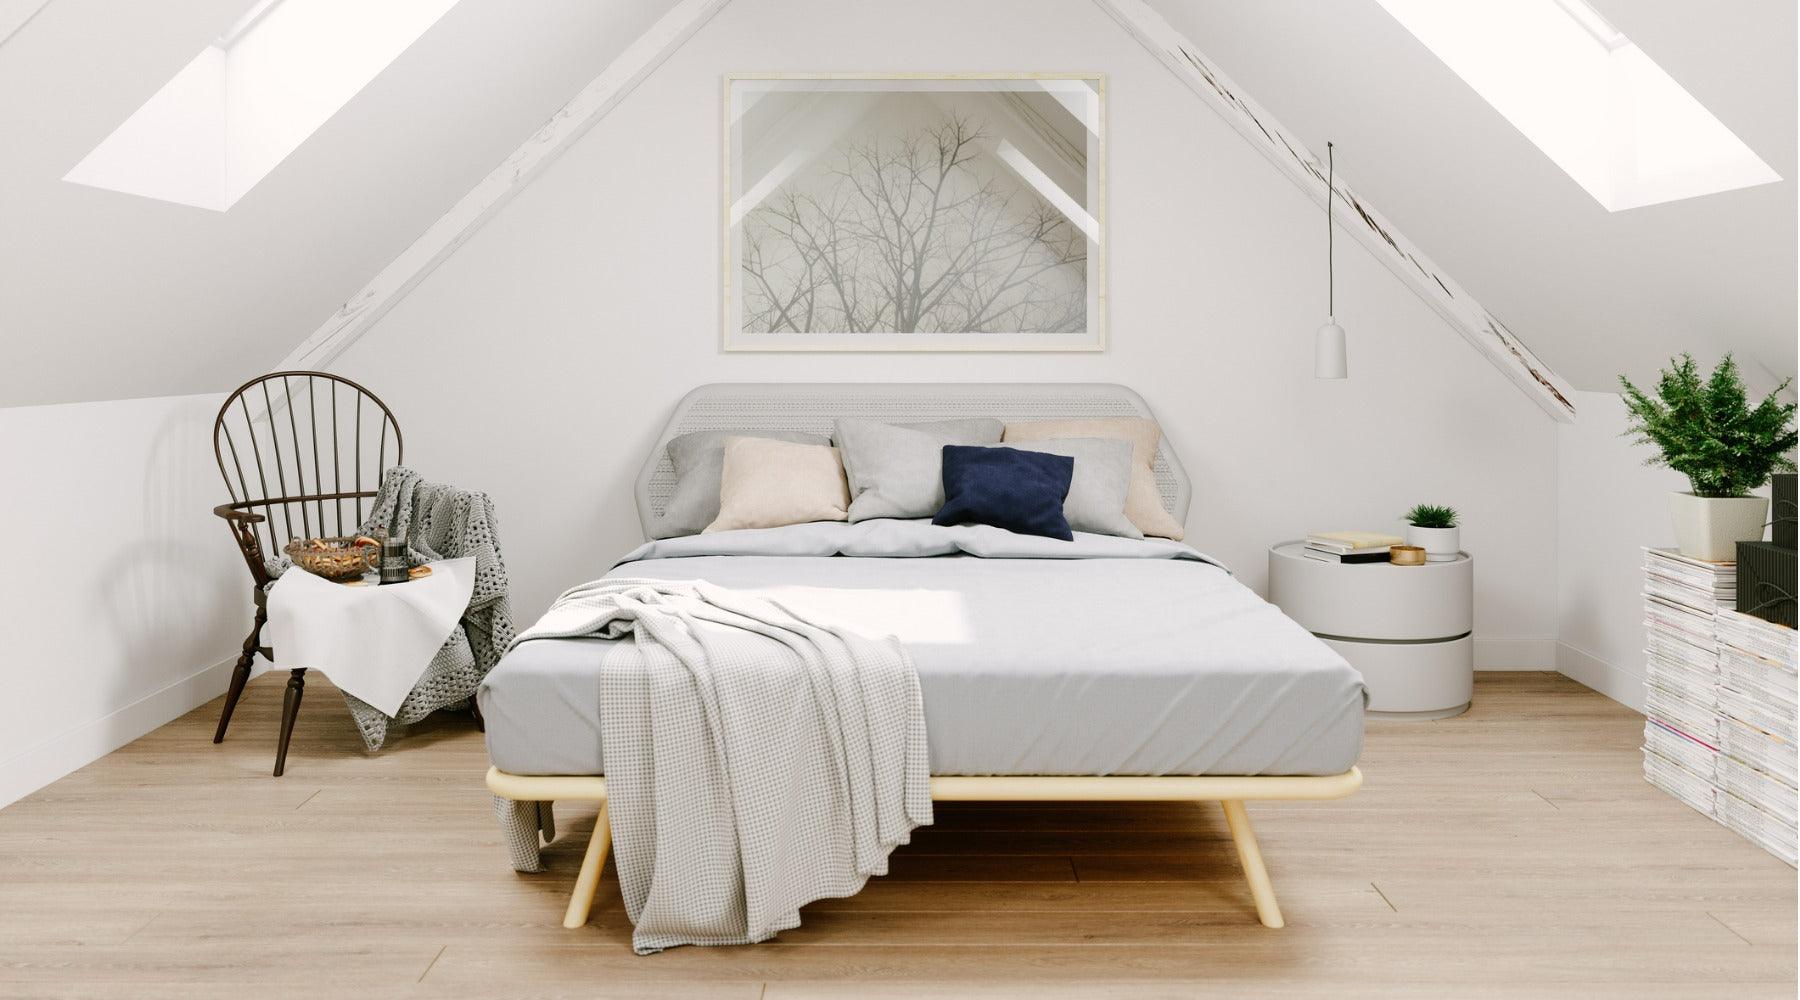 Scandinavian Design: Creating Balance in the Bedroom